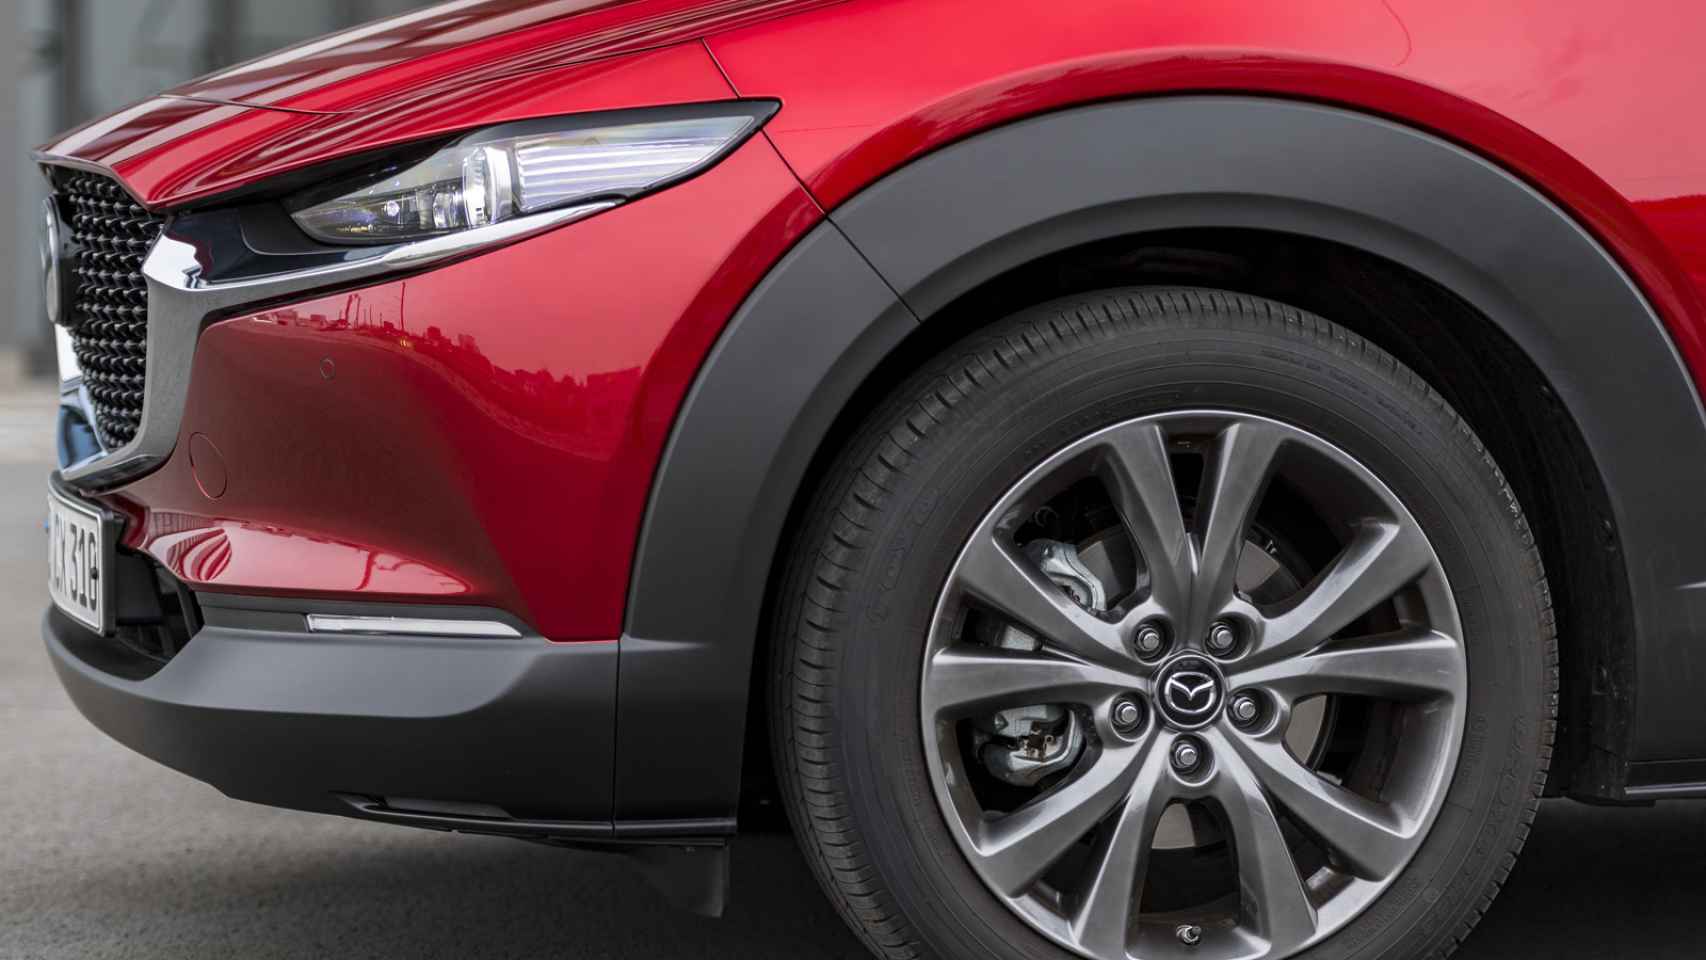 El Mazda CX-30 sorprende por sus líneas dinámicas que crean movimiento en la carrocería.